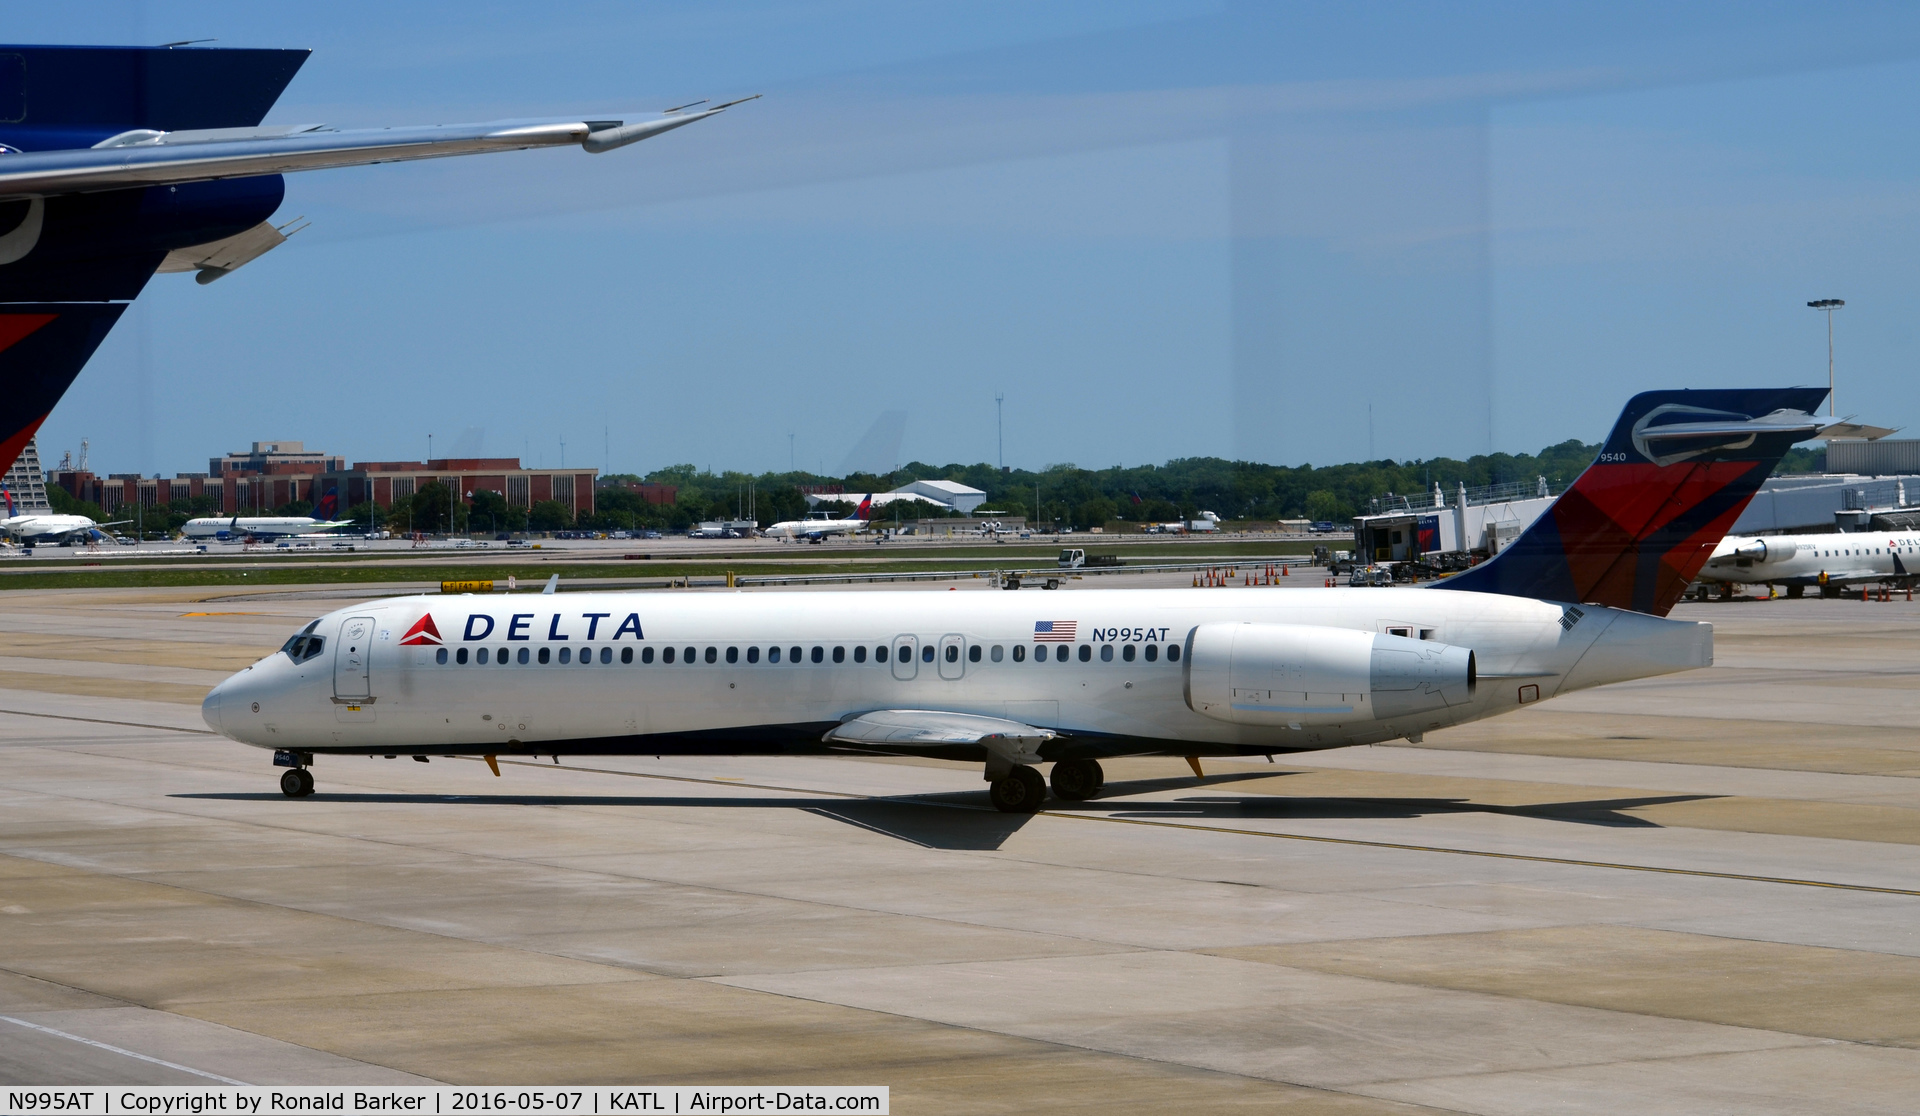 N995AT, 2002 Boeing 717-200 C/N 55139, Taxi for runway Atlanta